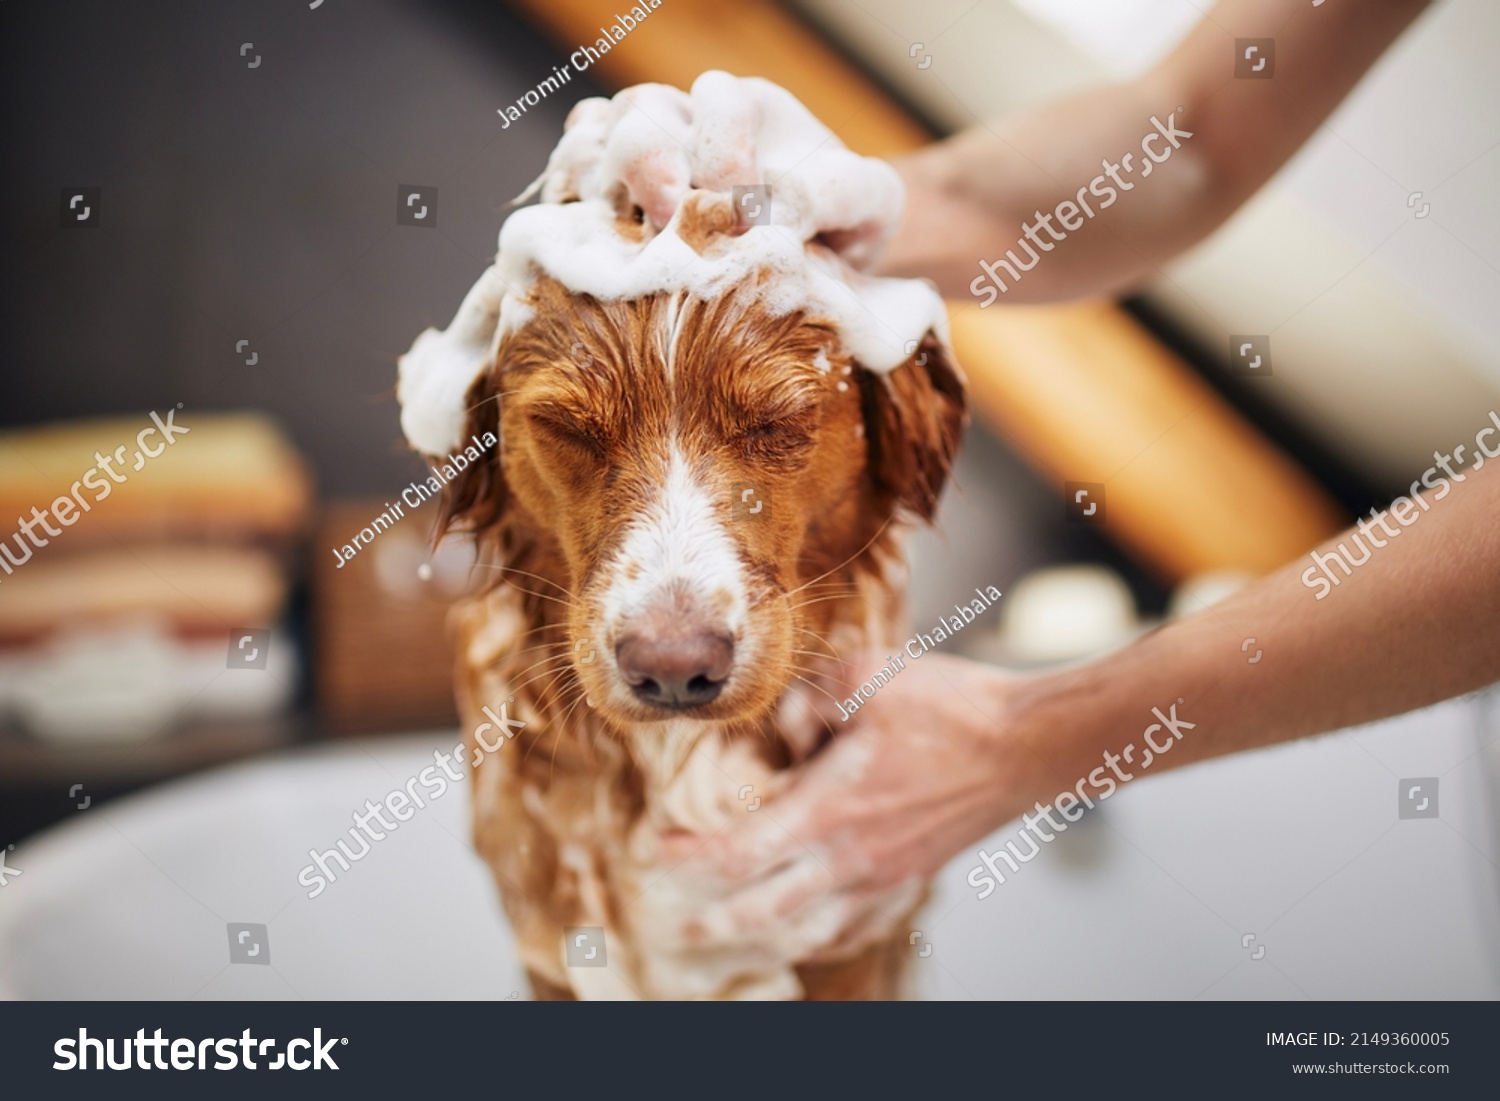 washing dog